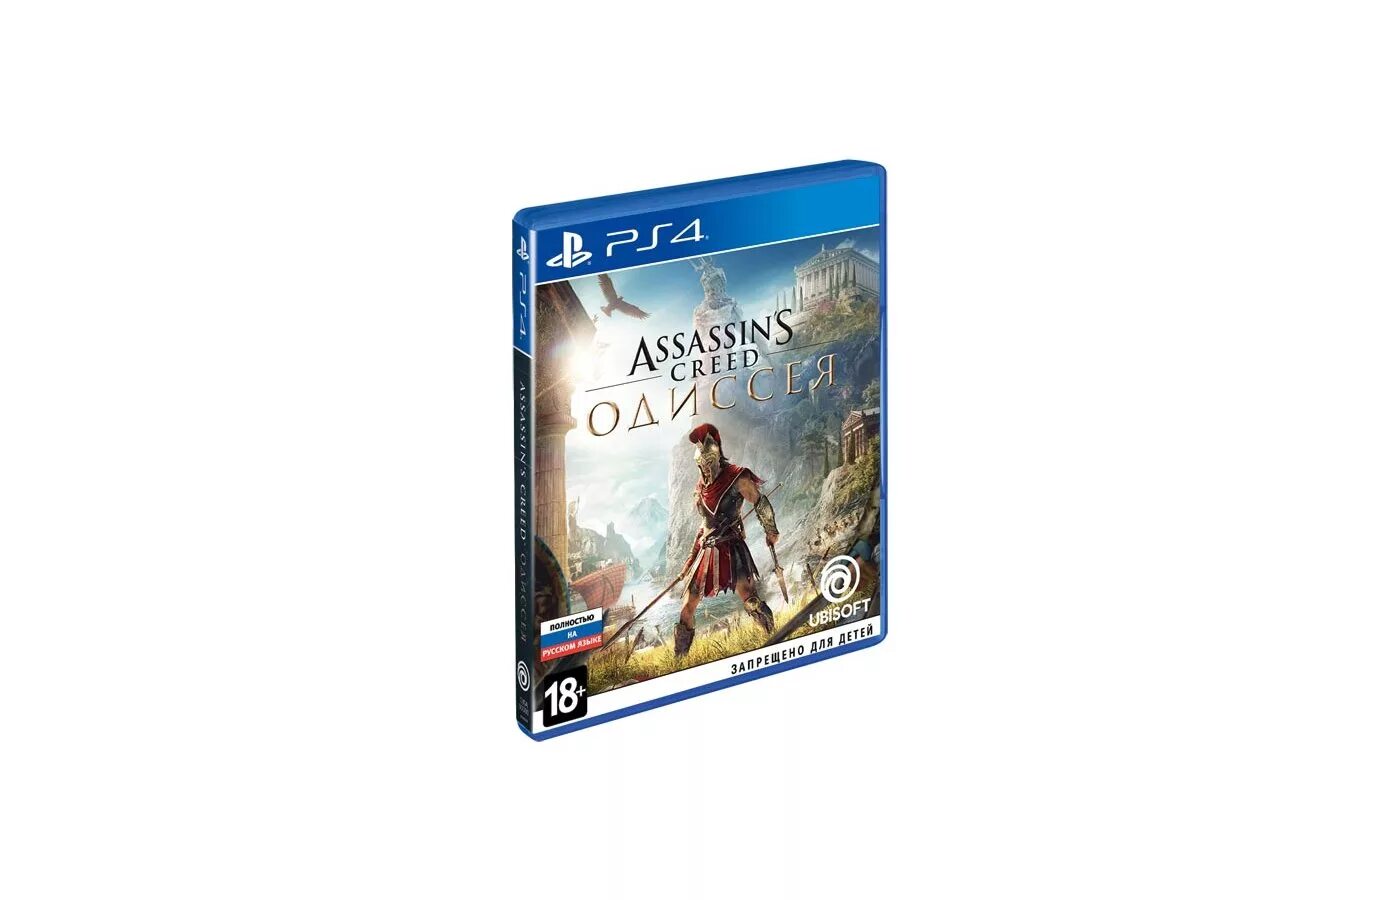 Ассасин Крид Одиссея диск ПС 4. Диск на ПС 4 ассасин Крид Odyssey. Assassin's Creed Одиссея ps4. Ps4 диск Assassins Creed. Assassins игра ps4